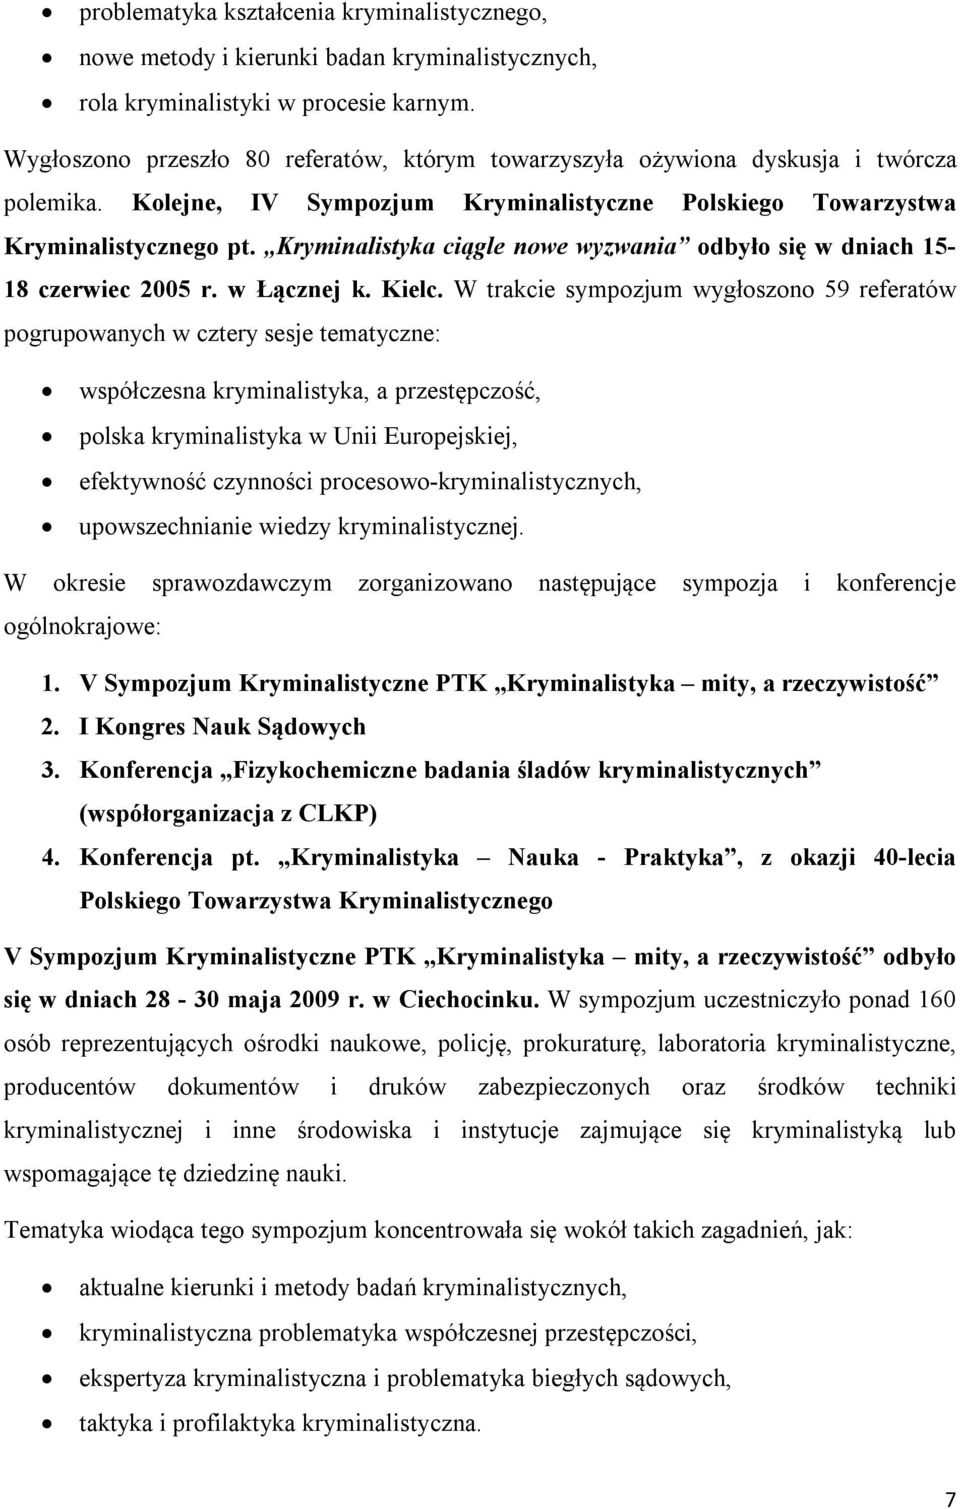 Kryminalistyka ciągle nowe wyzwania odbyło się w dniach 15-18 czerwiec 2005 r. w Łącznej k. Kielc.